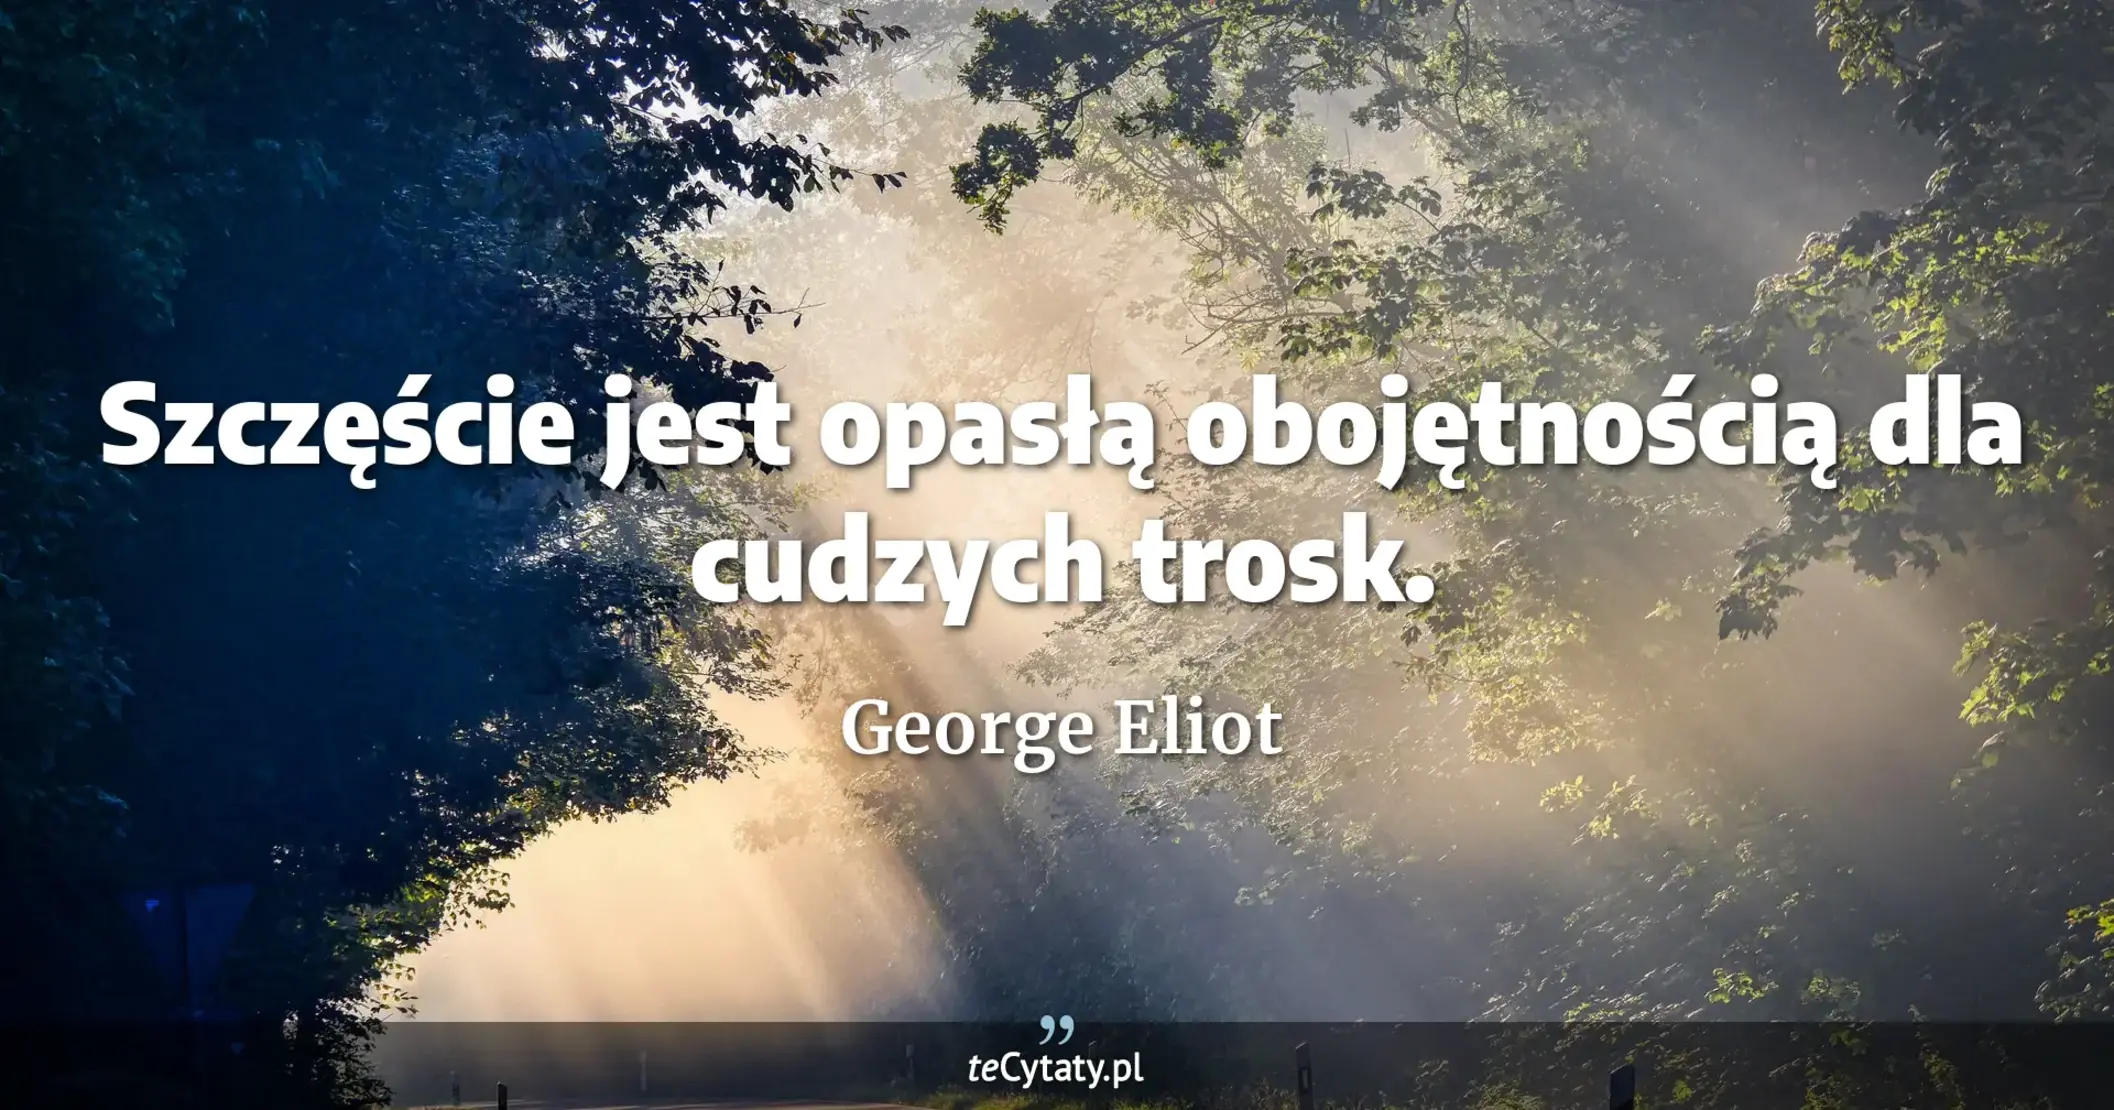 Szczęście jest opasłą obojętnością dla cudzych trosk. - George Eliot